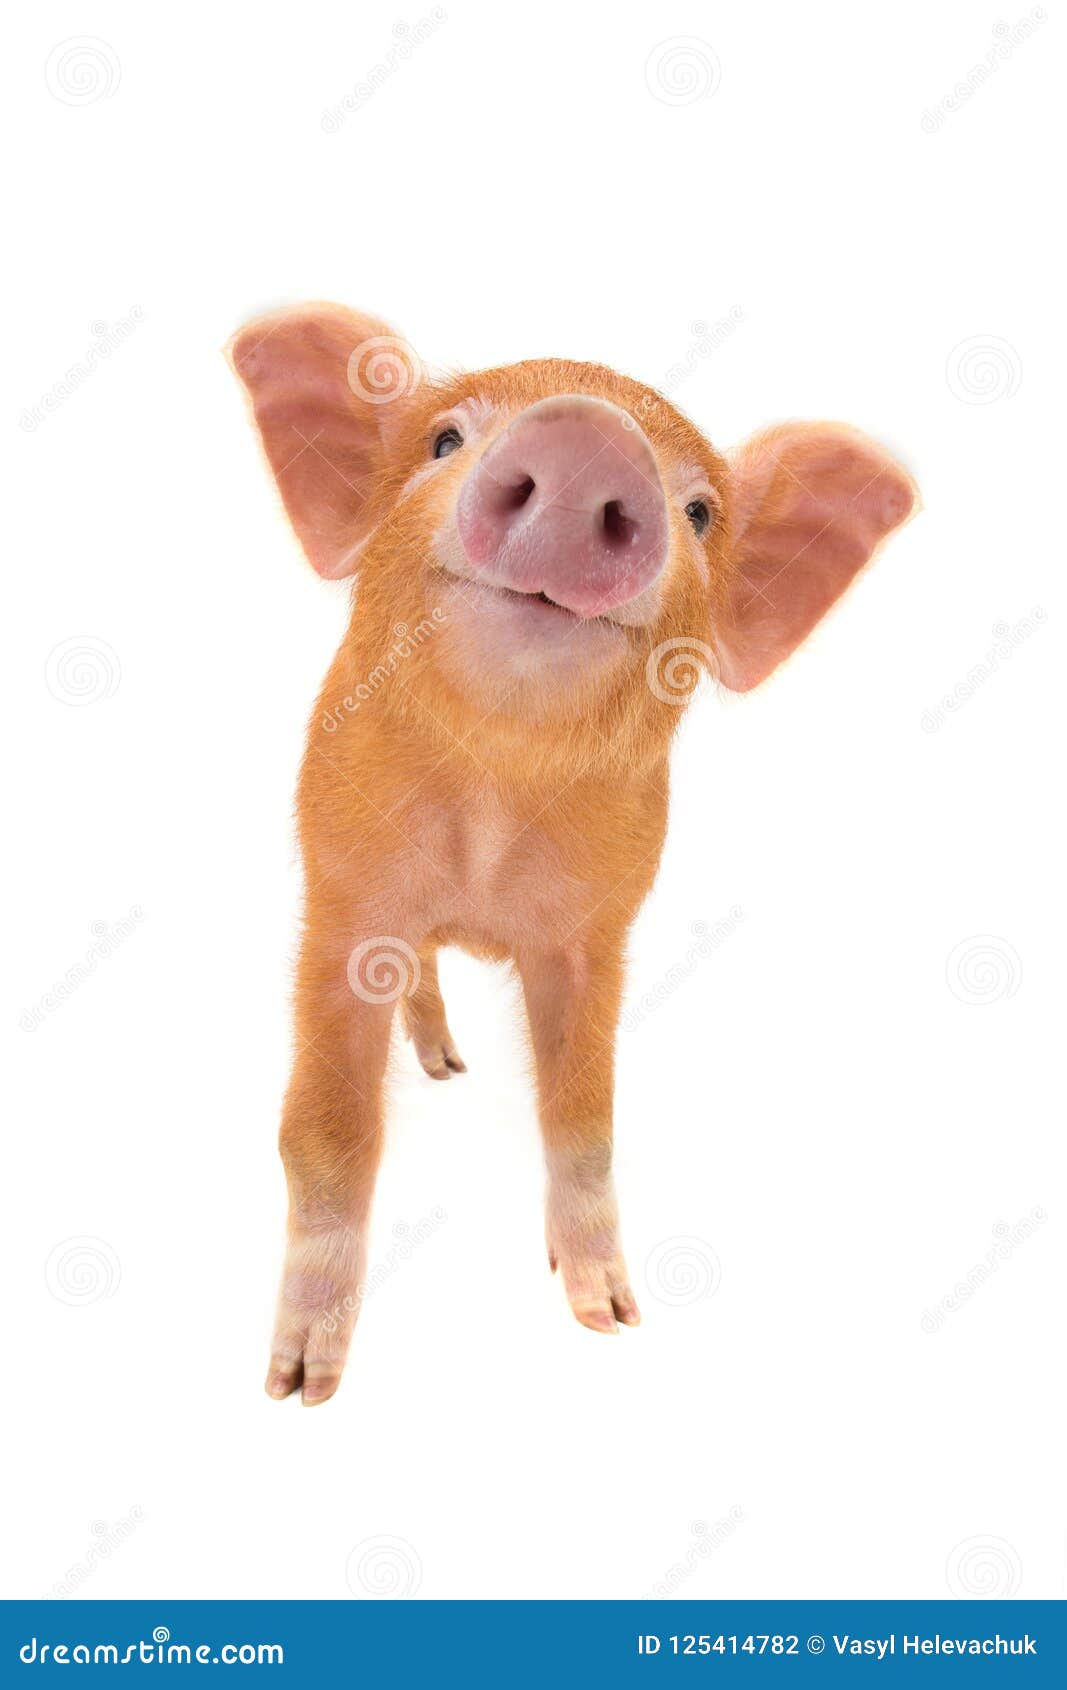 smiling piglet 